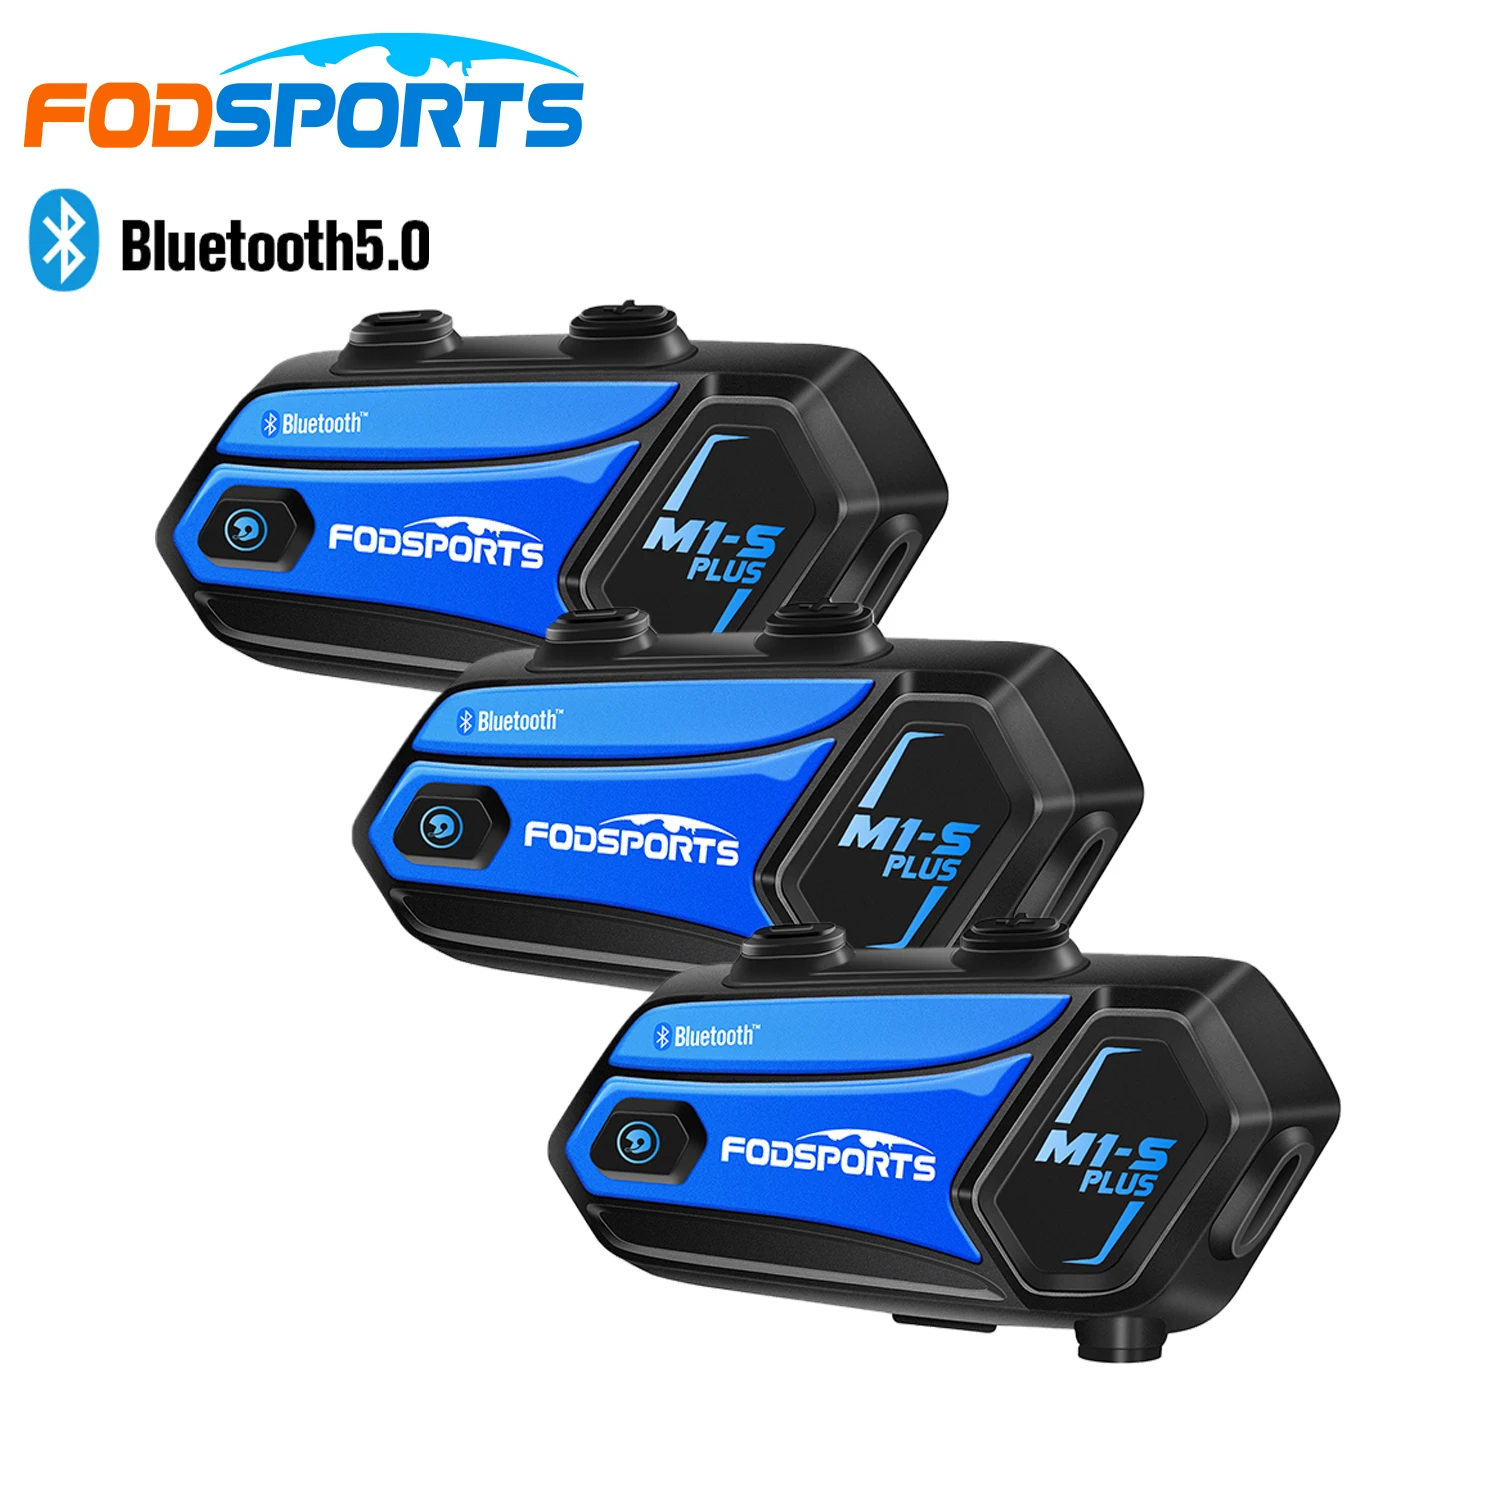 

3 шт. Fodsports M1-S плюс Moto rcycle домофон Беспроводной Bluetooth Шлемы-гарнитуры 8 всадников intercomunicador moto обмена музыки FM